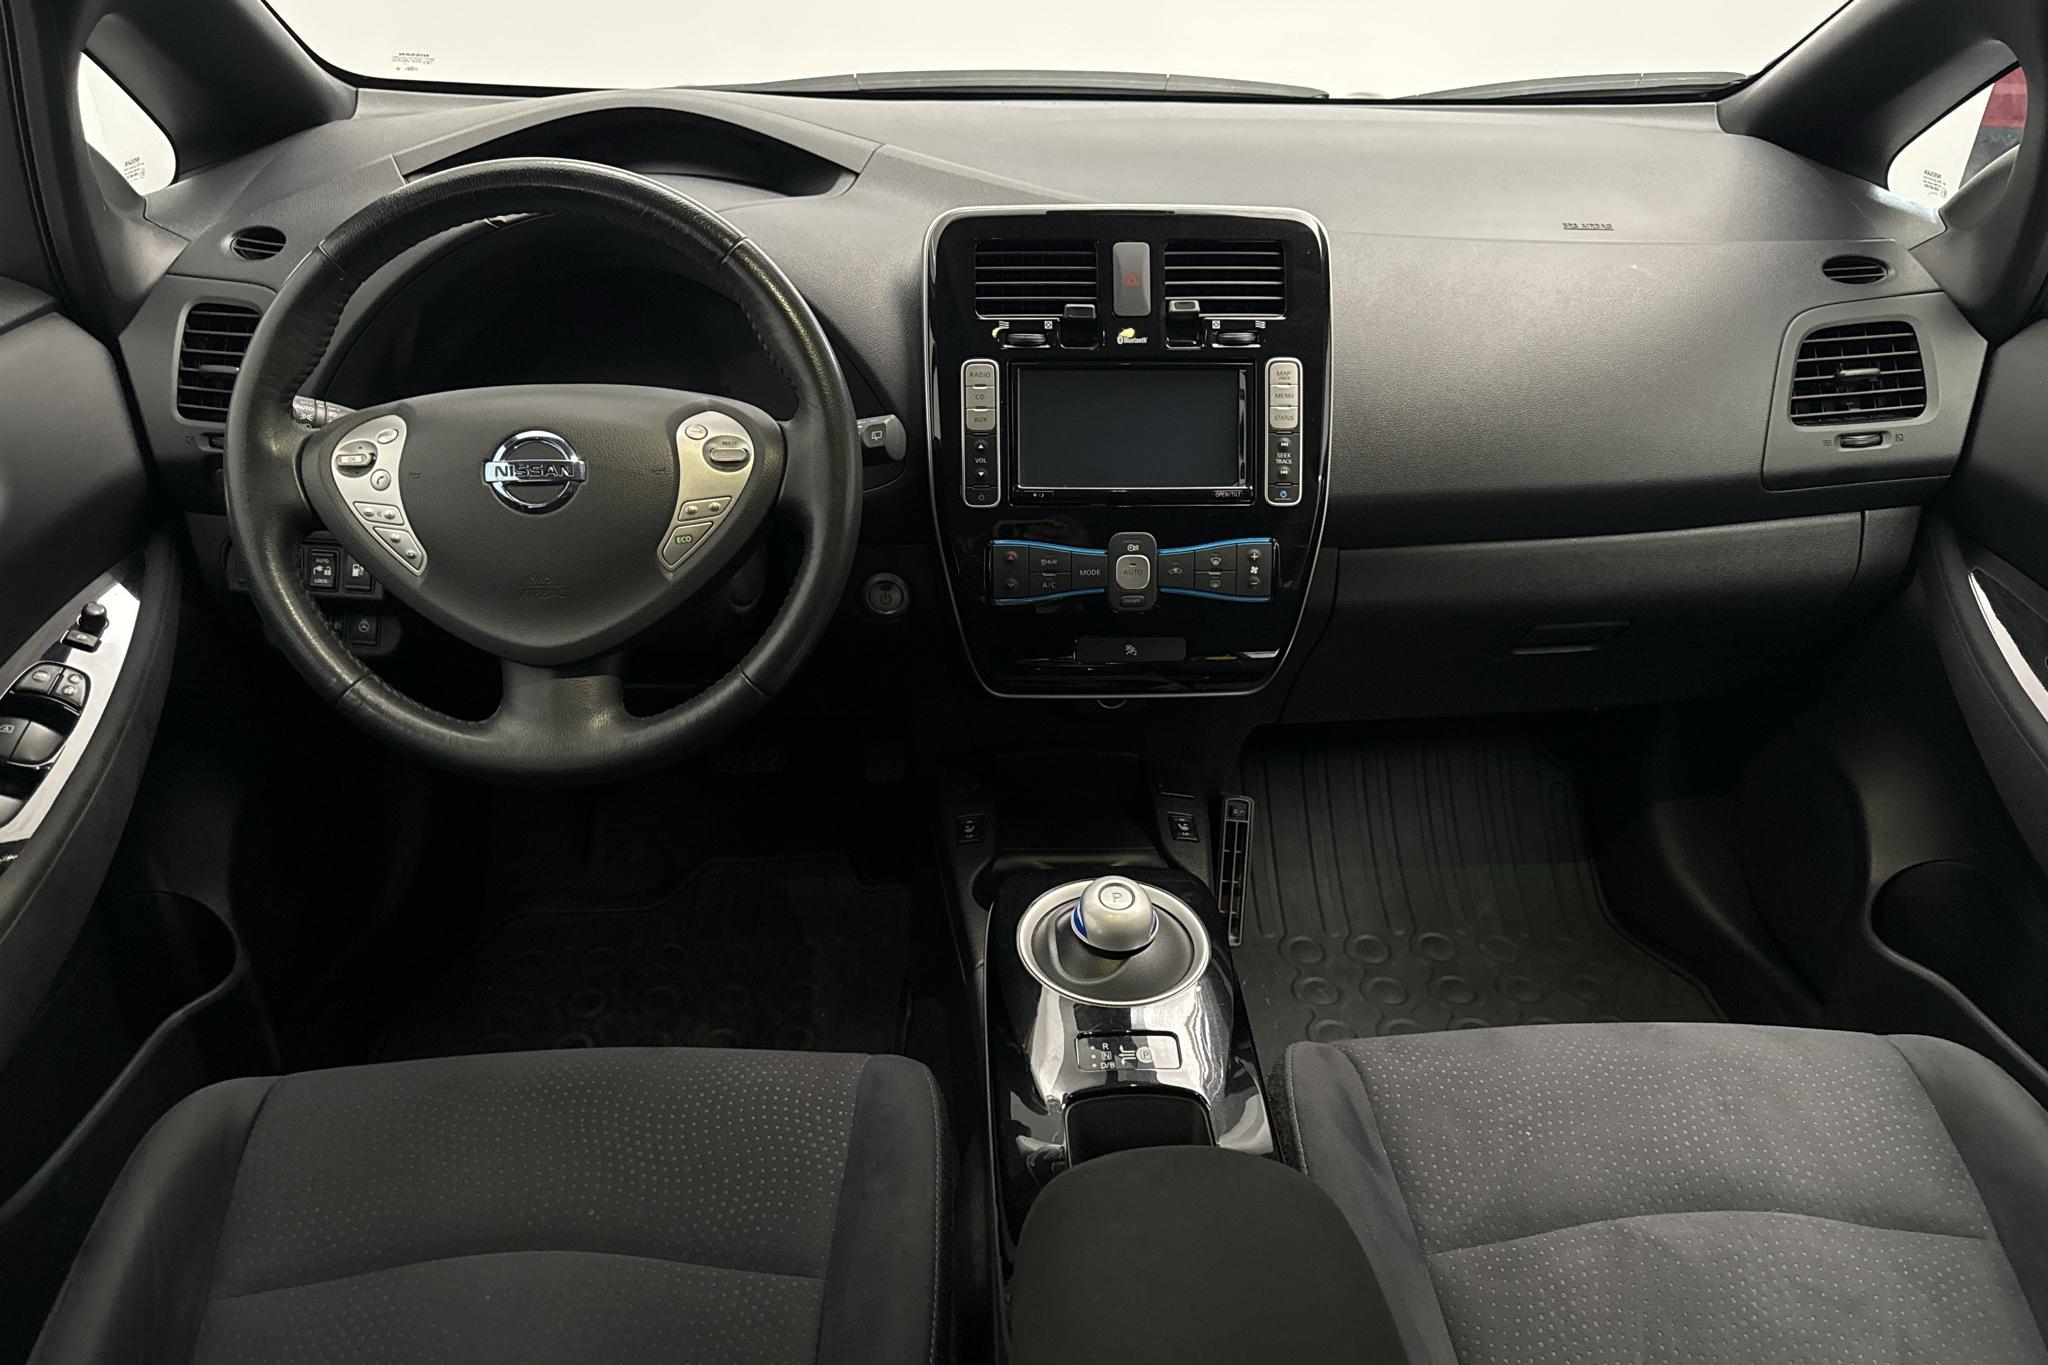 Nissan LEAF 5dr (109hk) - 4 860 mil - Automat - vit - 2017